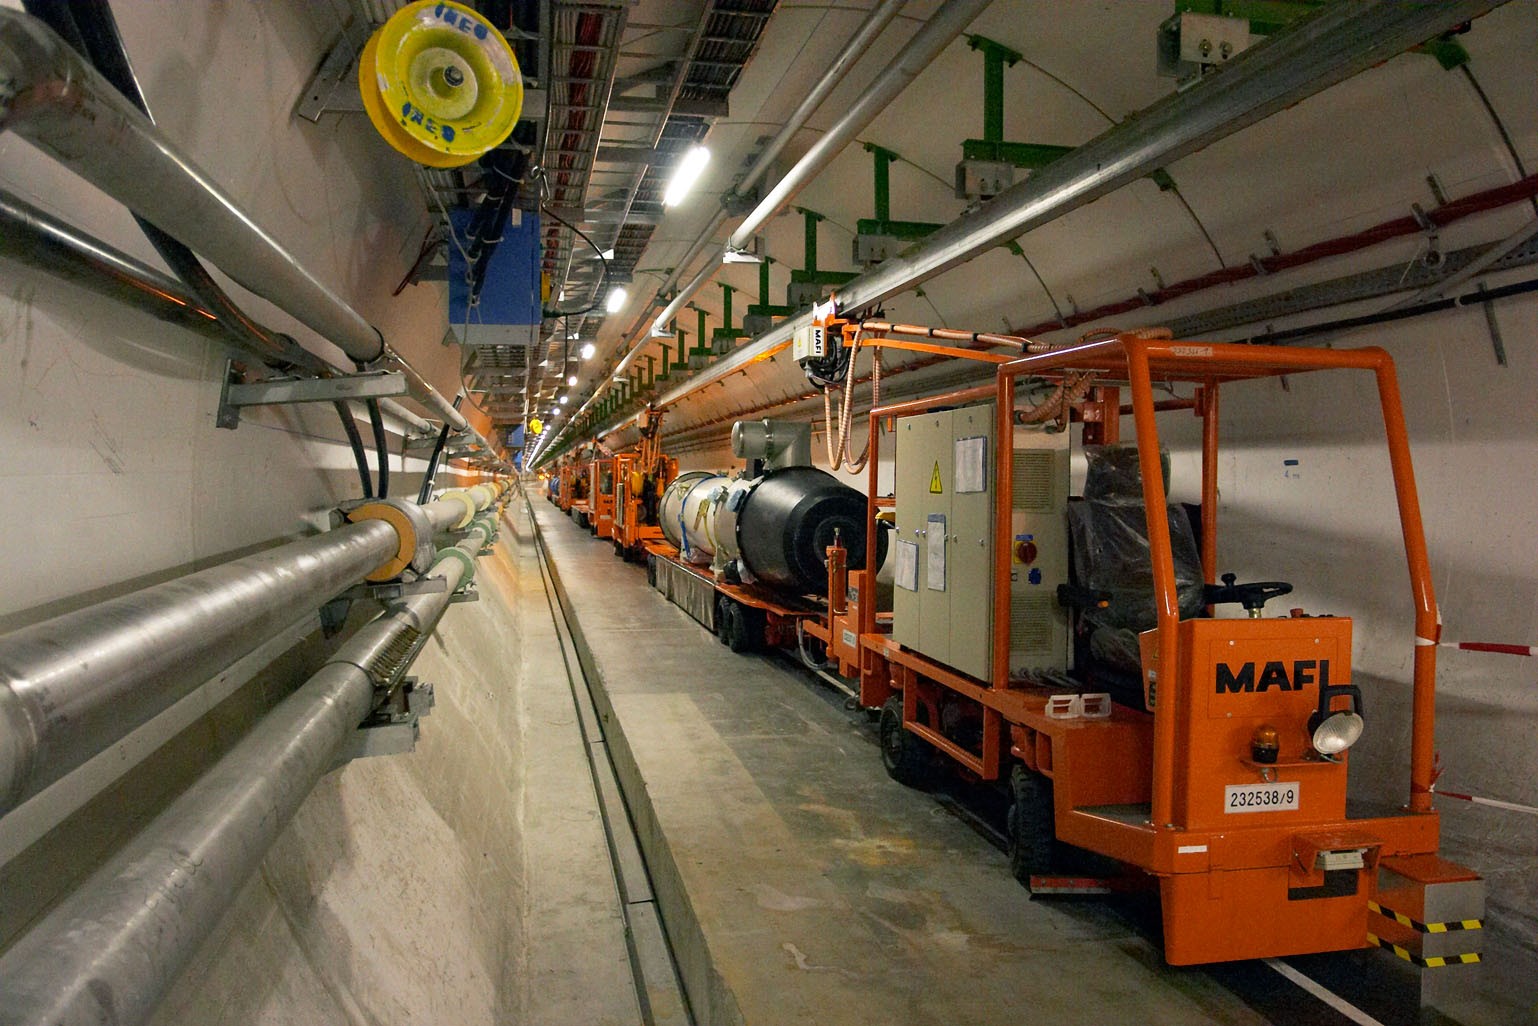 Historyczna obserwacja w CERN. Wielki Zderzacz Hadronów posłużył naukowcom w wielkim celu